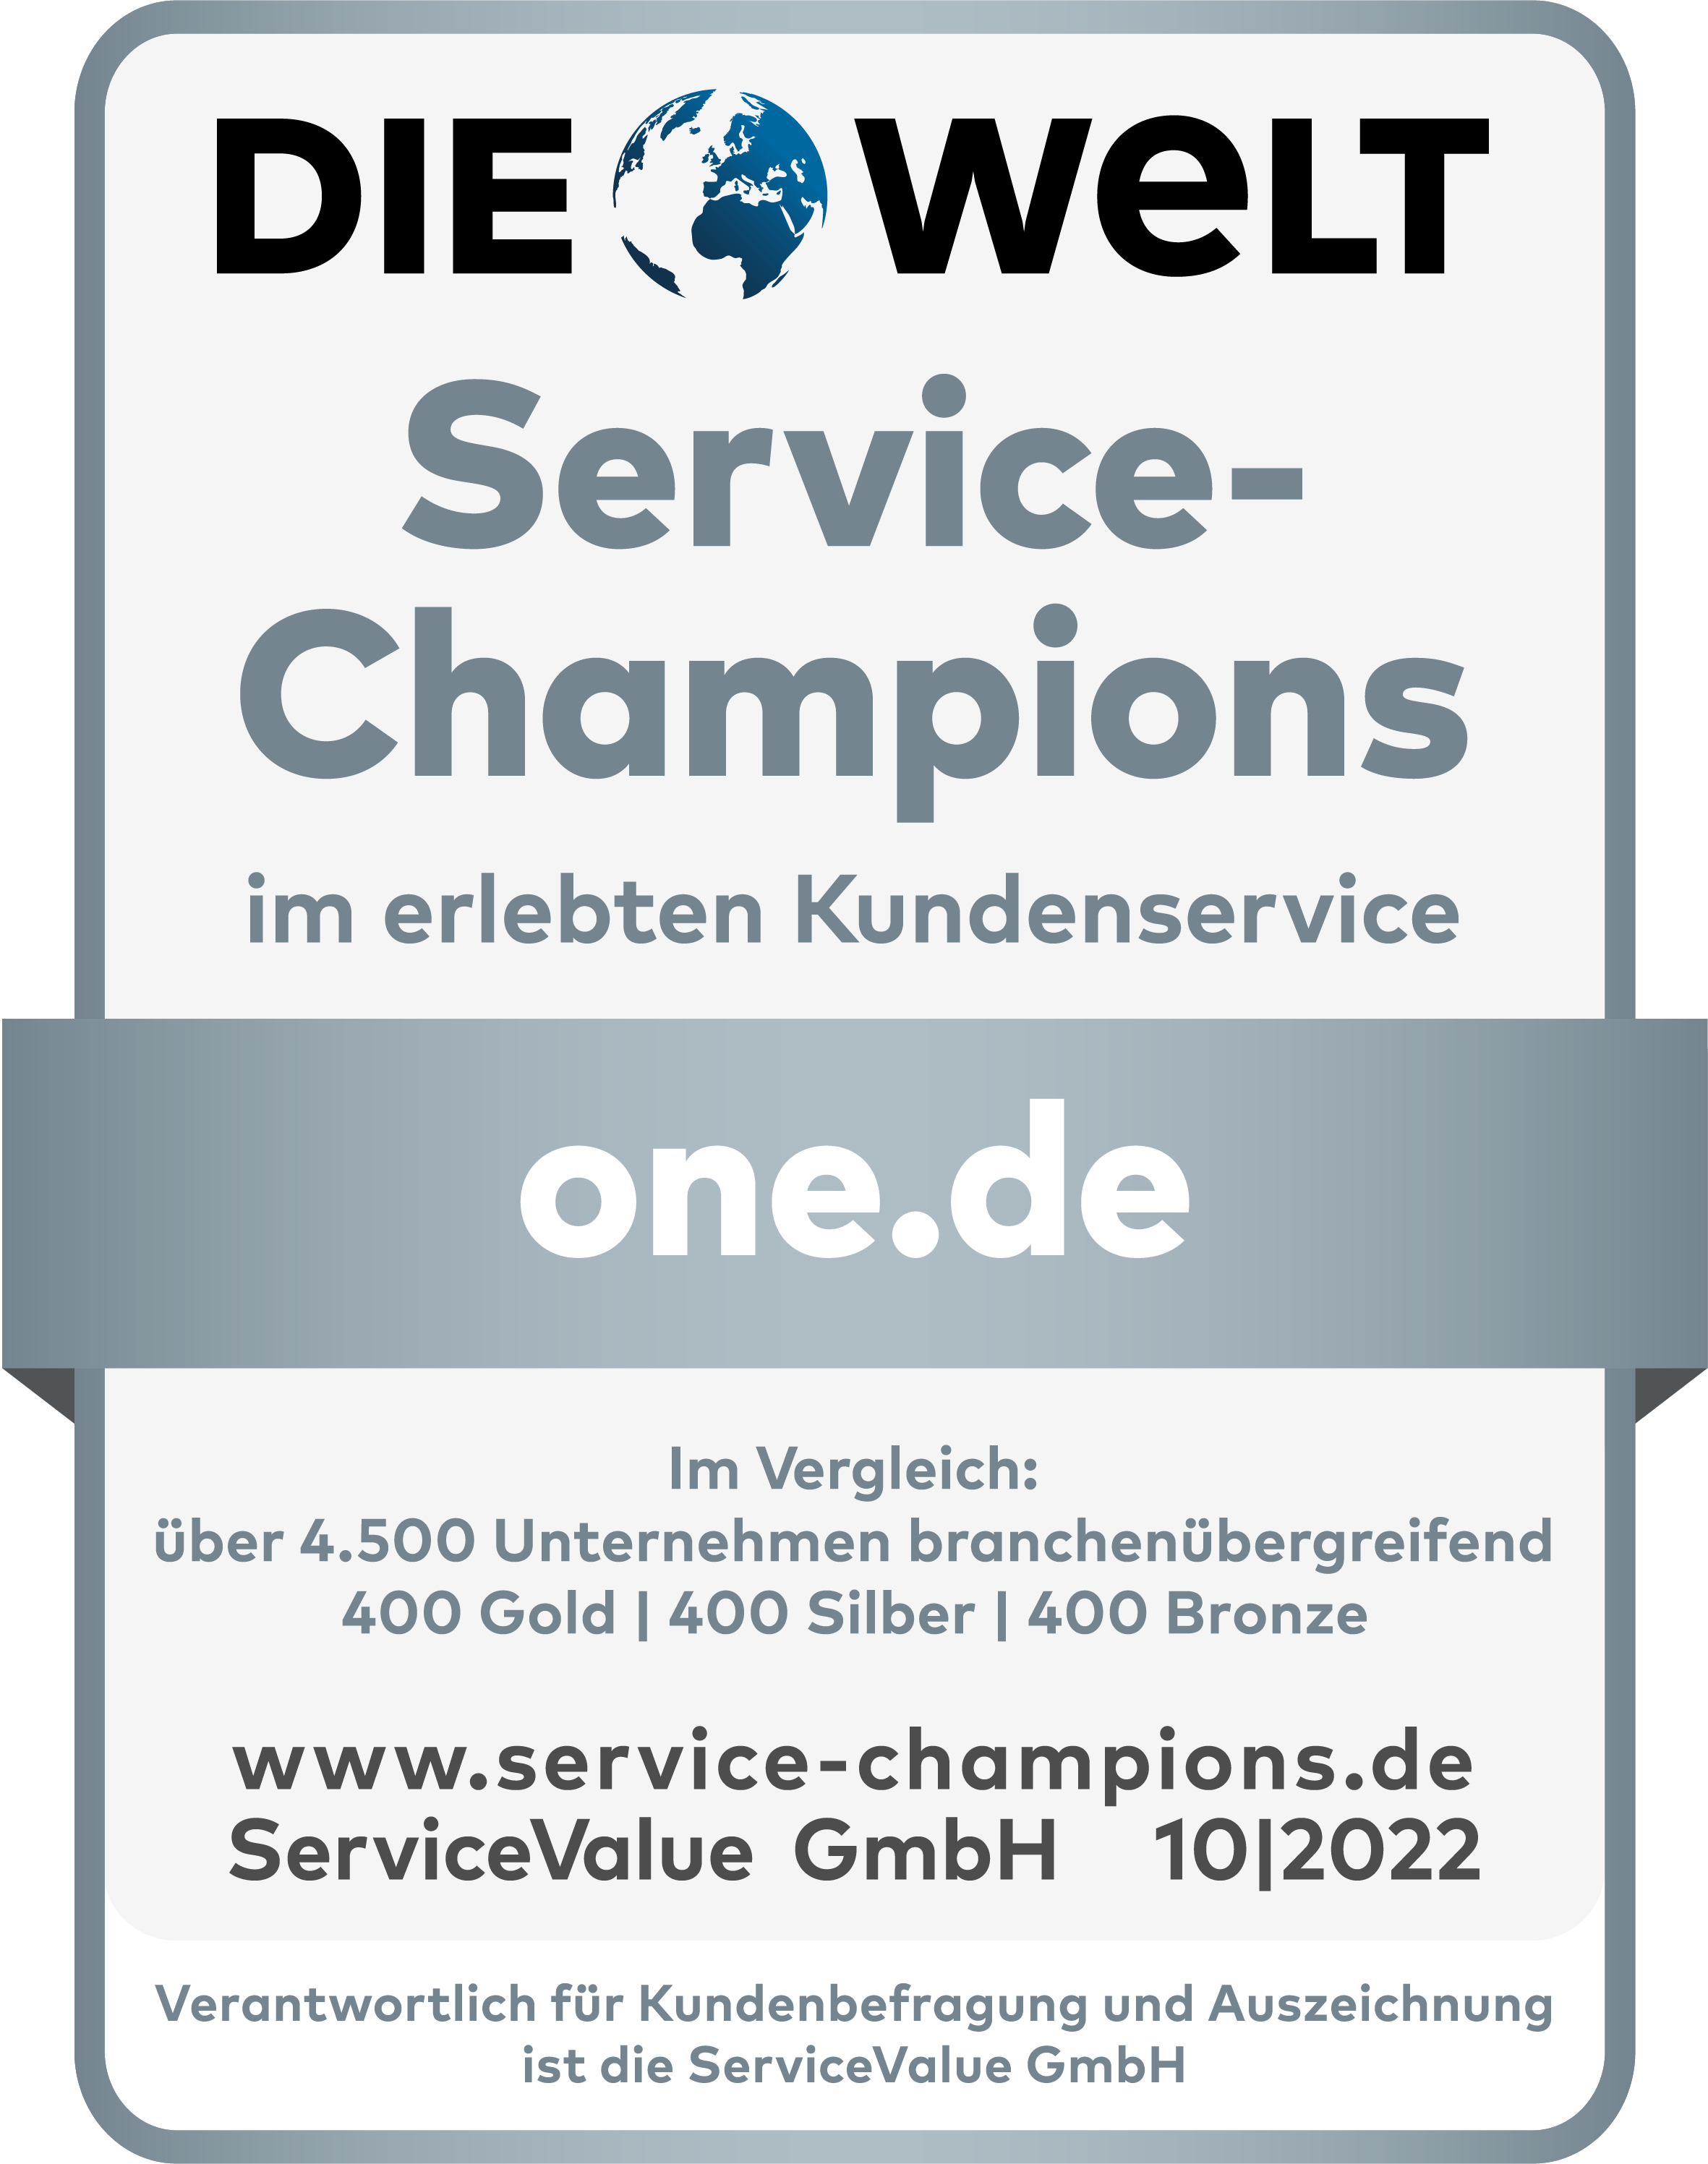 ONE.de ausgezeichnet DIE WELT Service-Champion